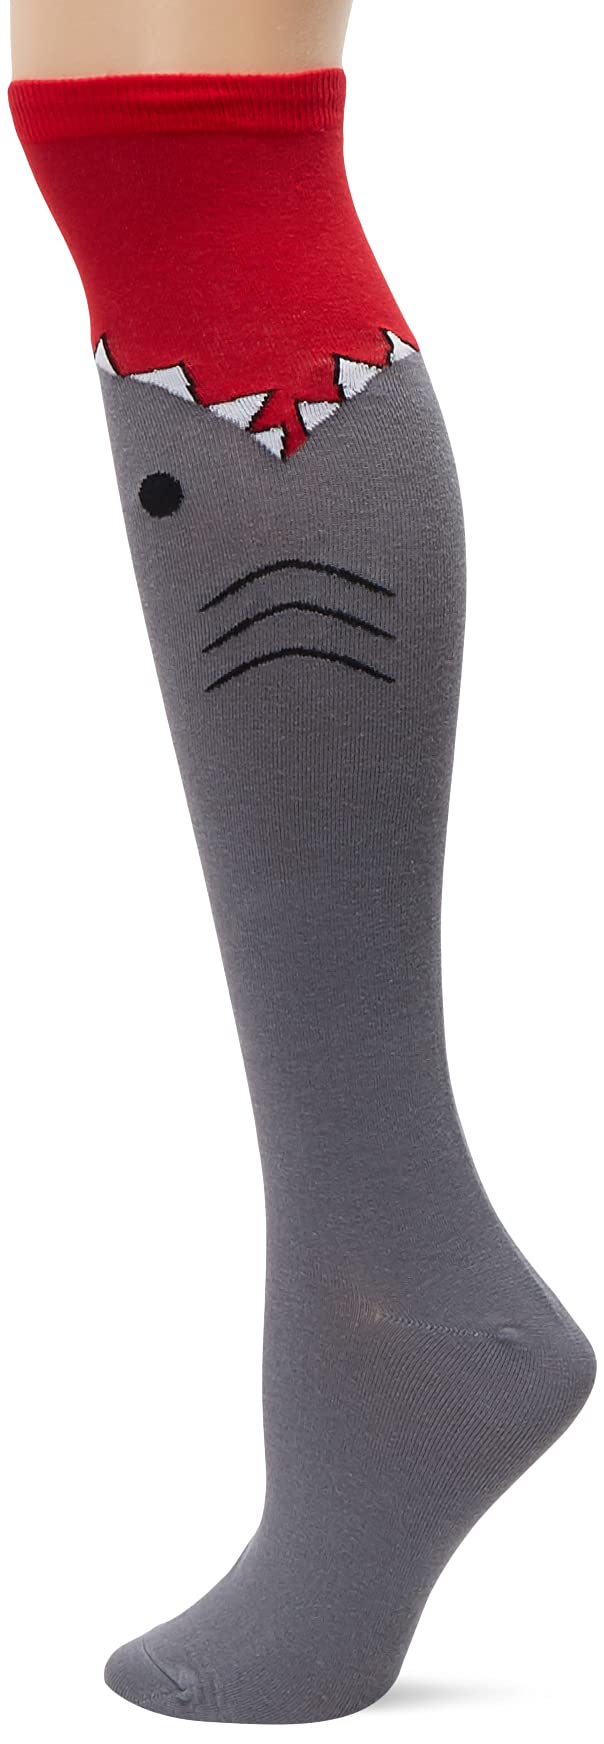 K. Bell Socks womens Funny Animal Novelty Knee High Socks